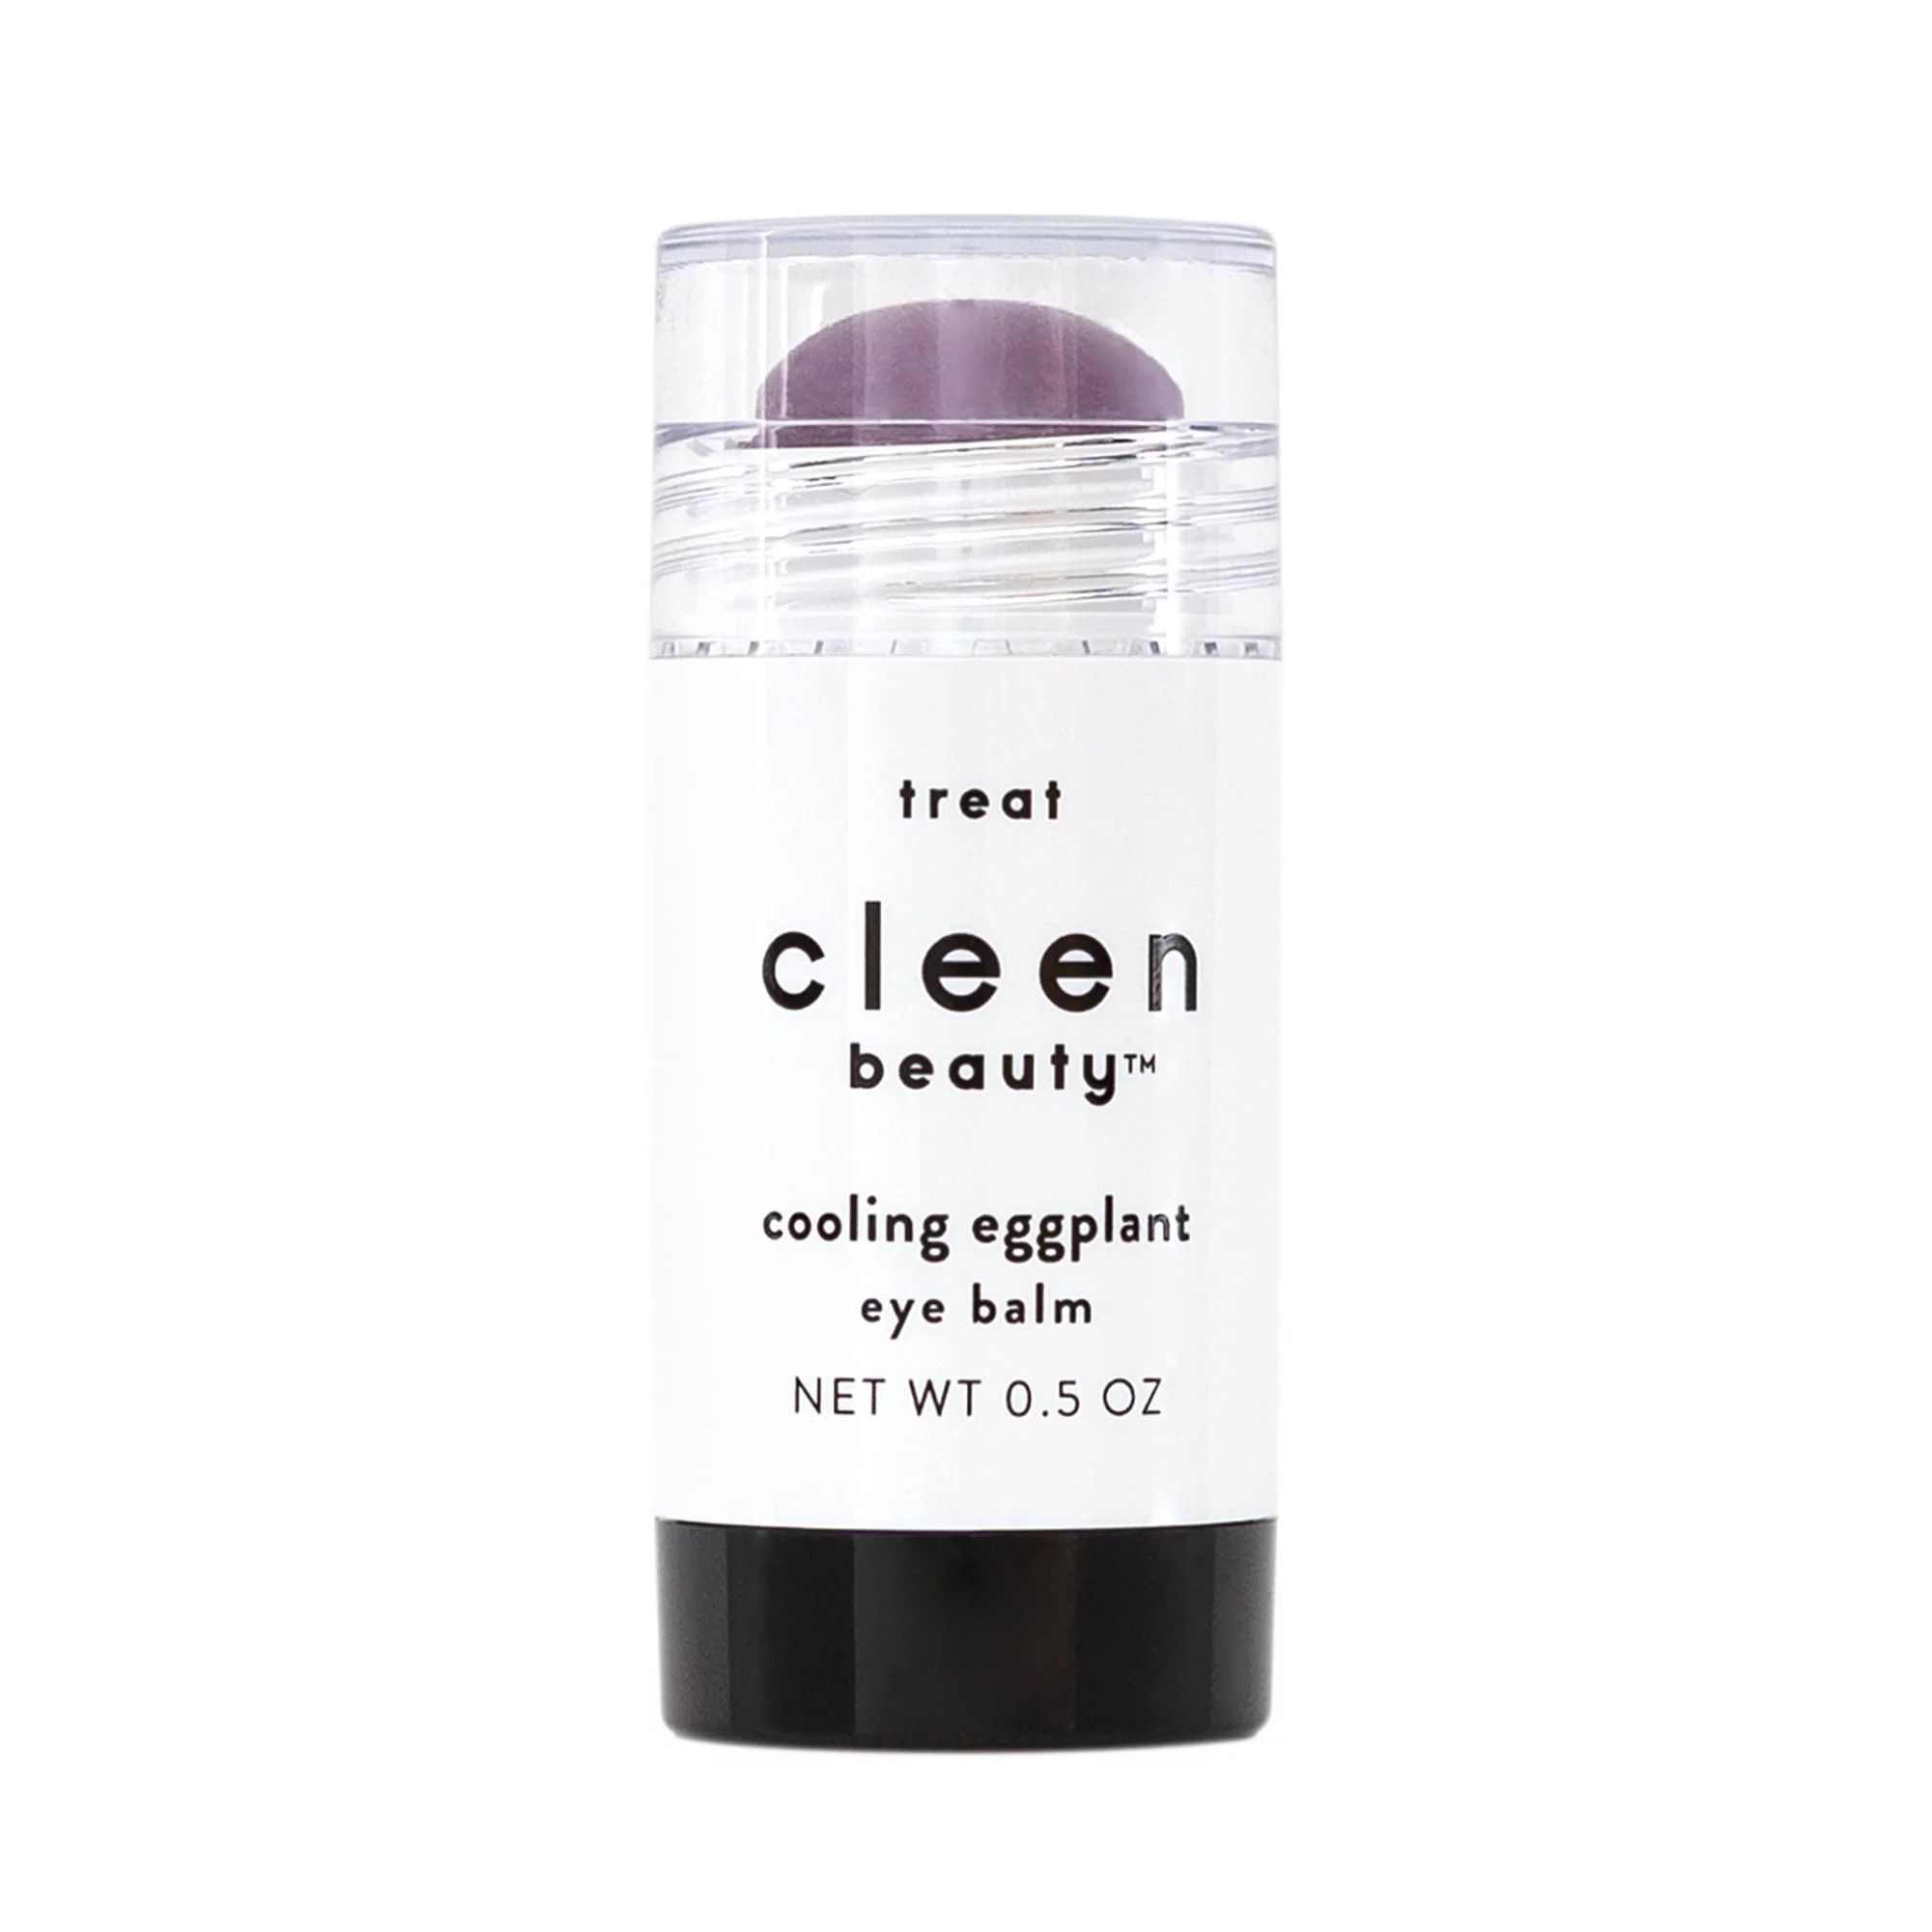 cleen beauty Cooling Eggplant Eye Balm Net wt. 0.5 oz. | Walmart (US)